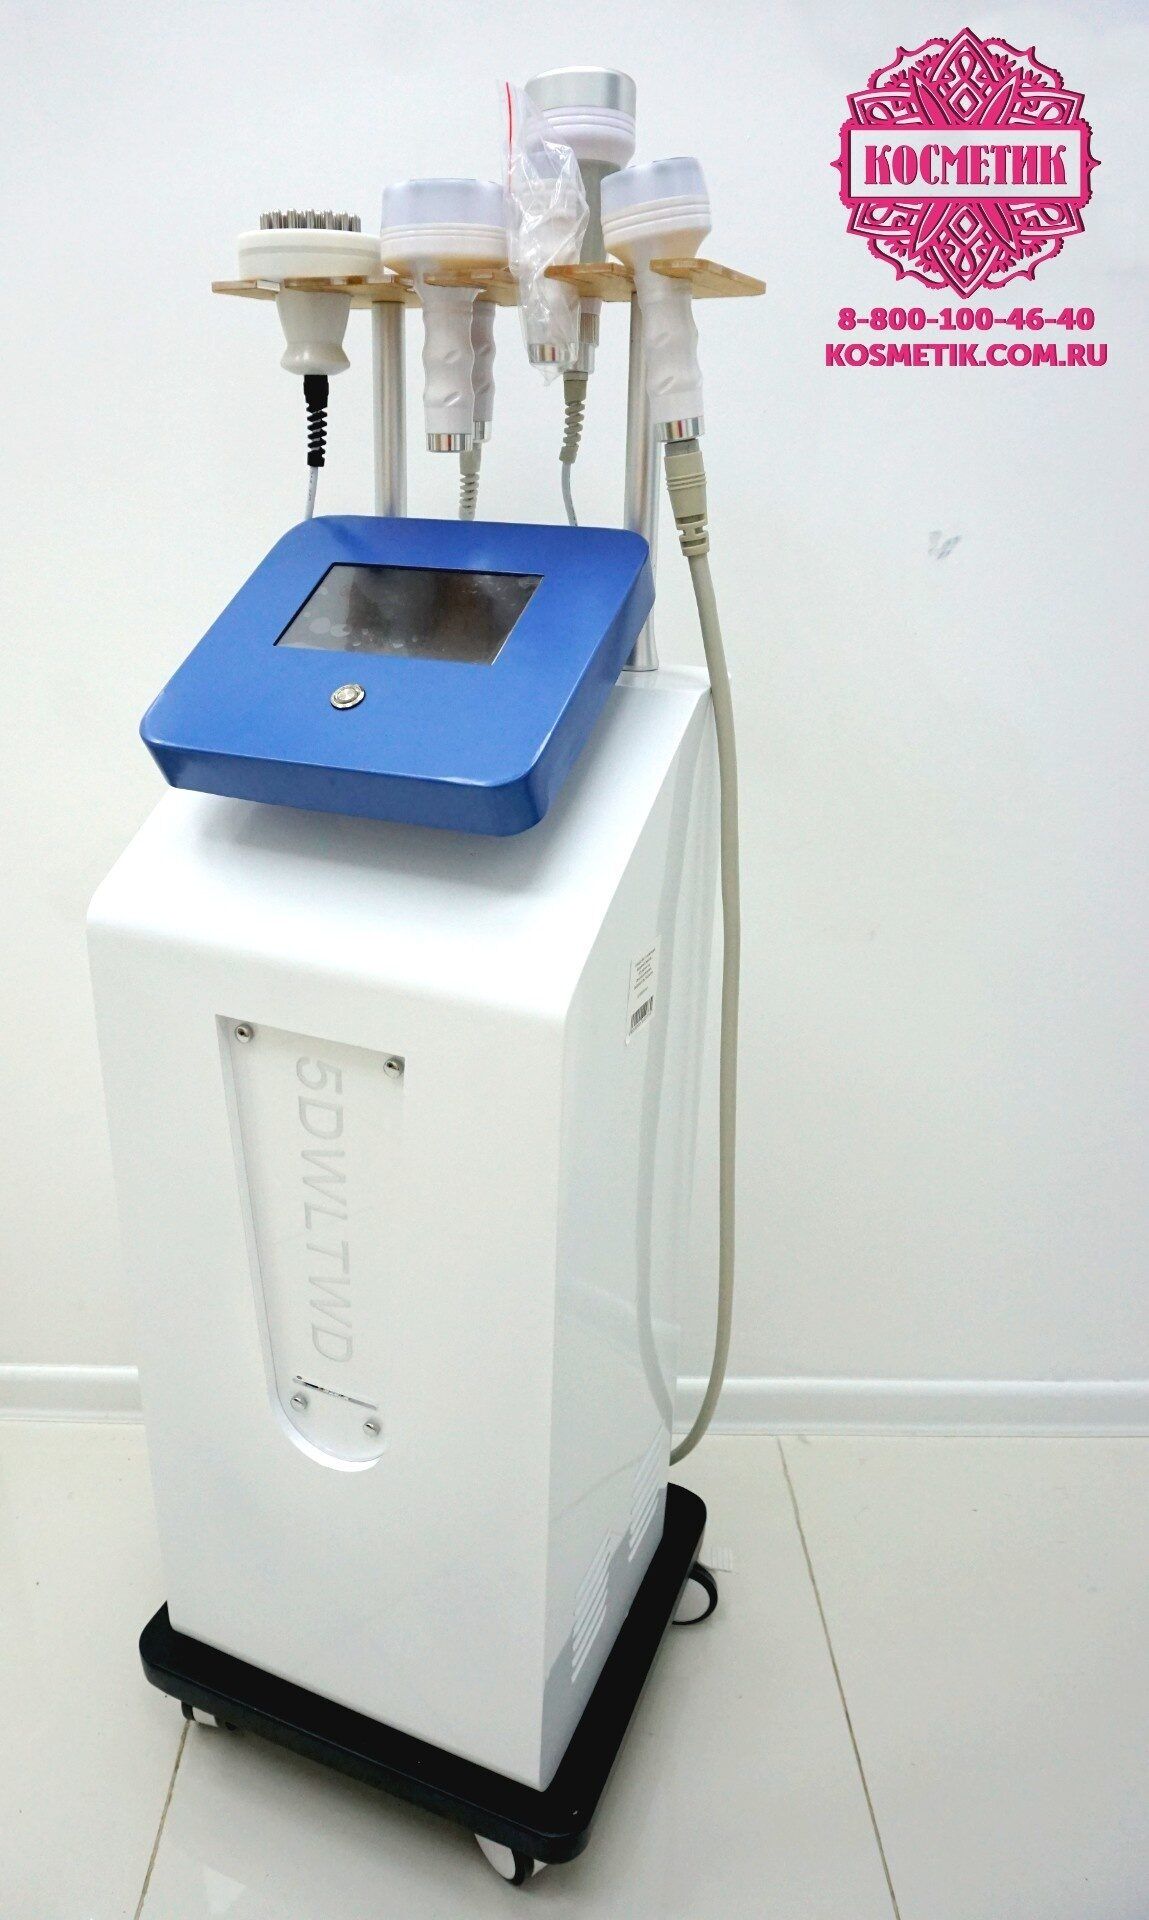 Видеообучение на аппарате WL-12: кавитация, вакуумный массаж, с рф-лифтингом, Фотохромотерапия, Вибромассаж, Биофотон